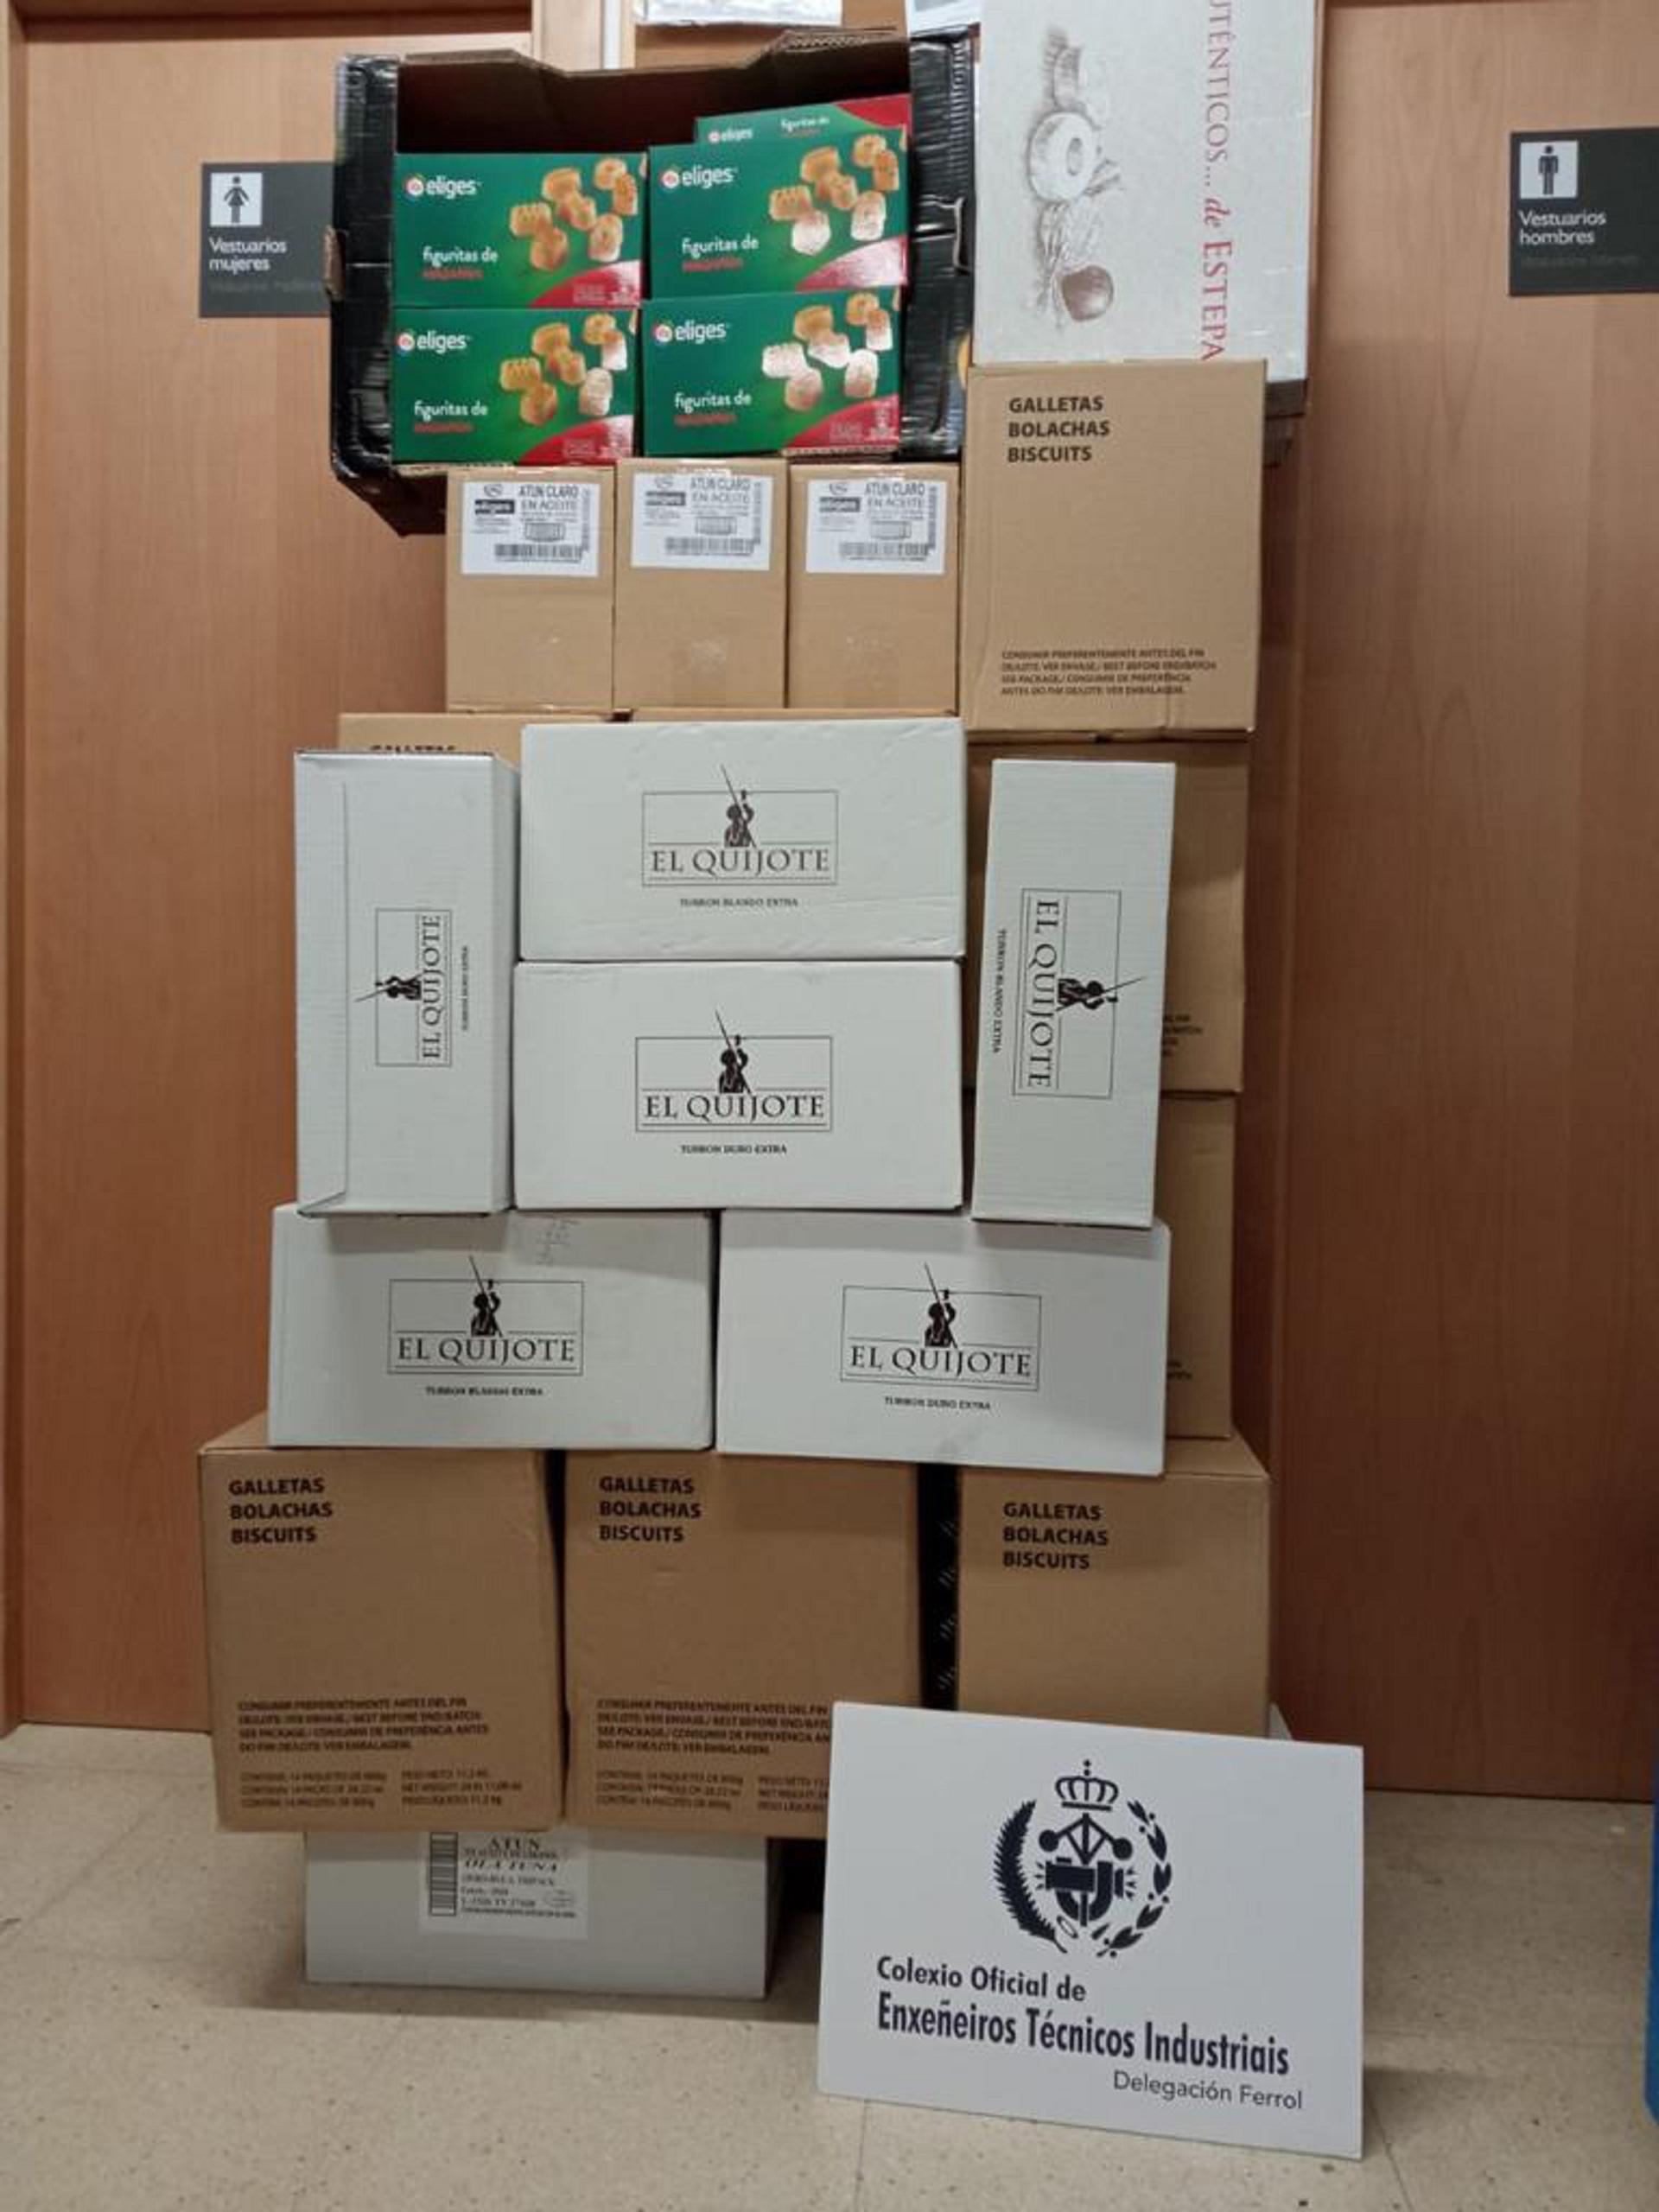 Productos donados por Coeticor a la Cocina Económica de Ferrol (Coeticor).